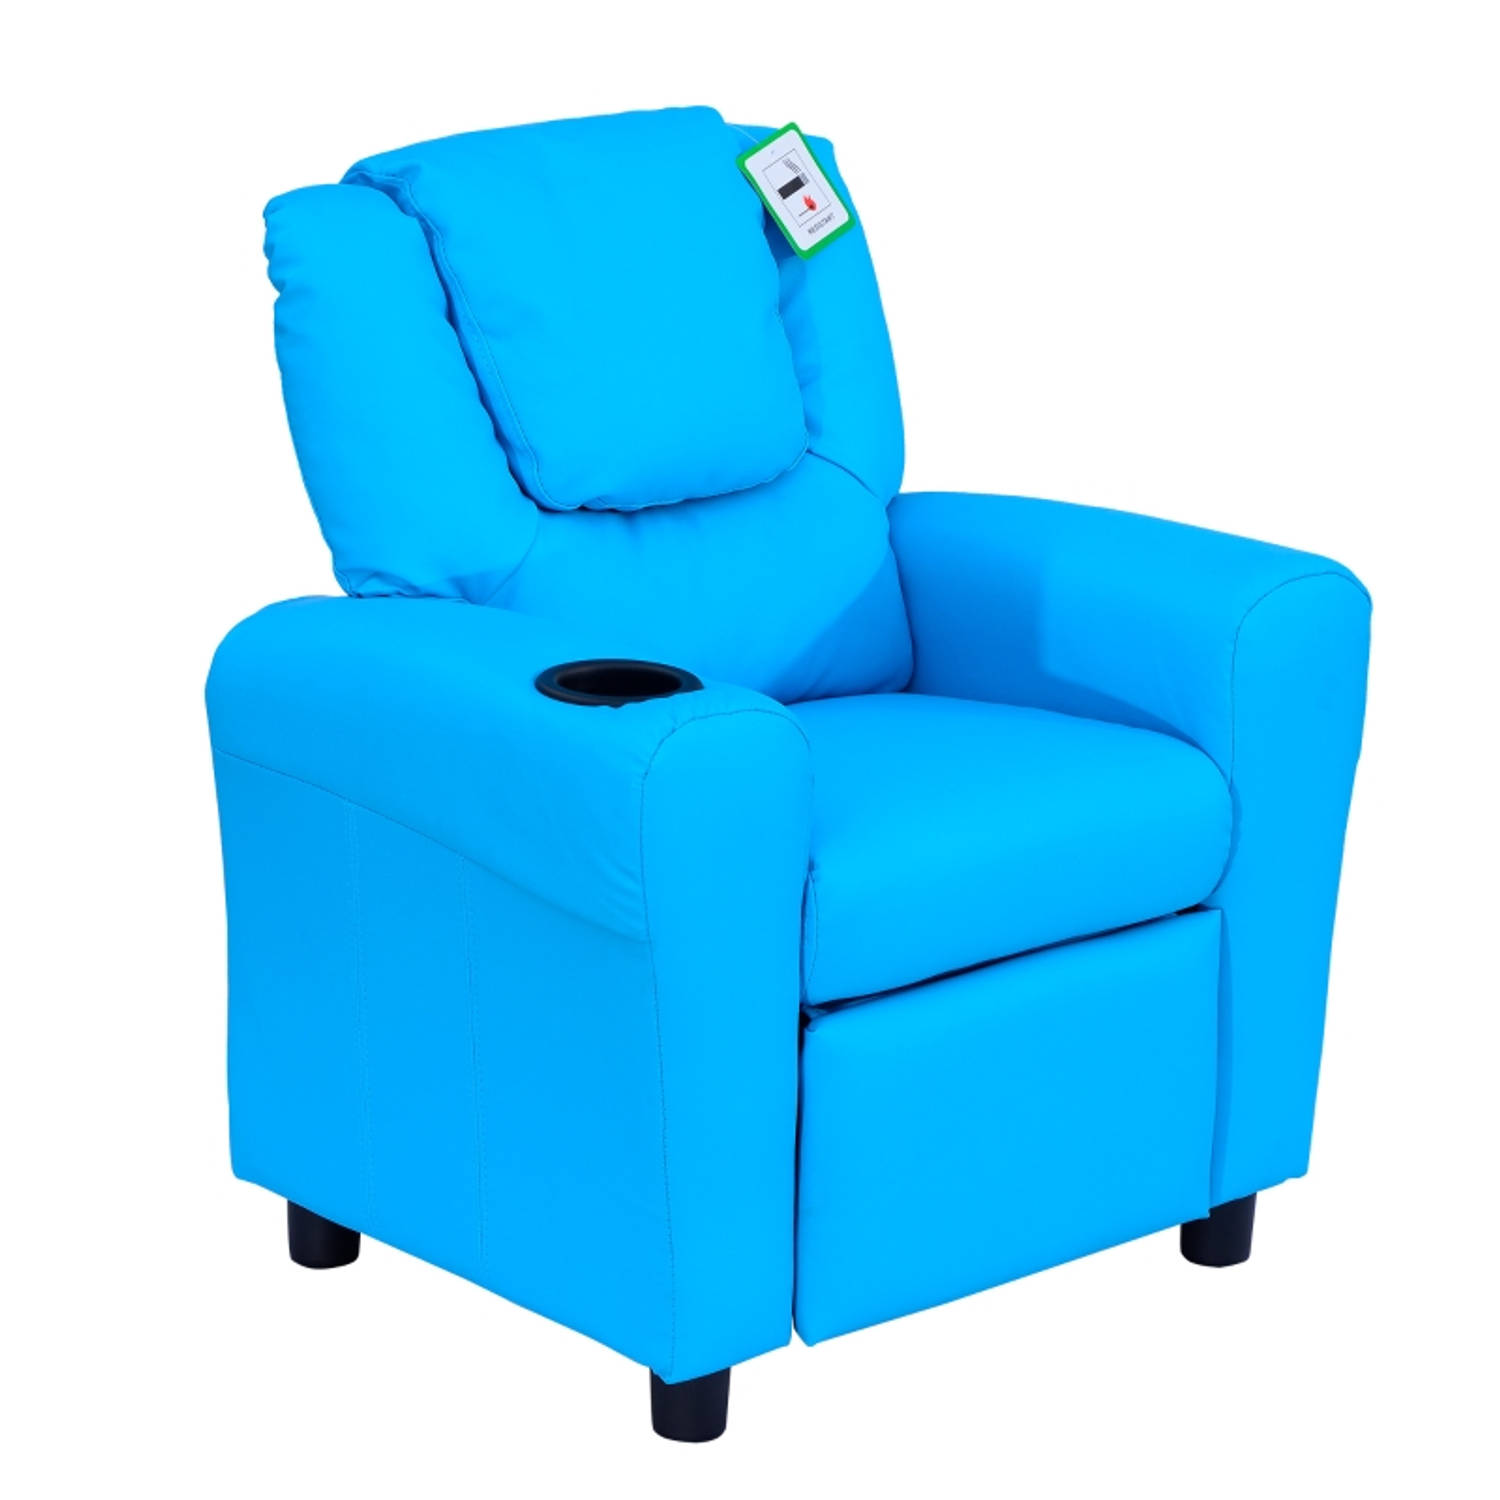 Kinderstoel Kinderzetel Kindersofa Kinderbankje Relaxstoel Blauw 62 x 56 x 69 cm